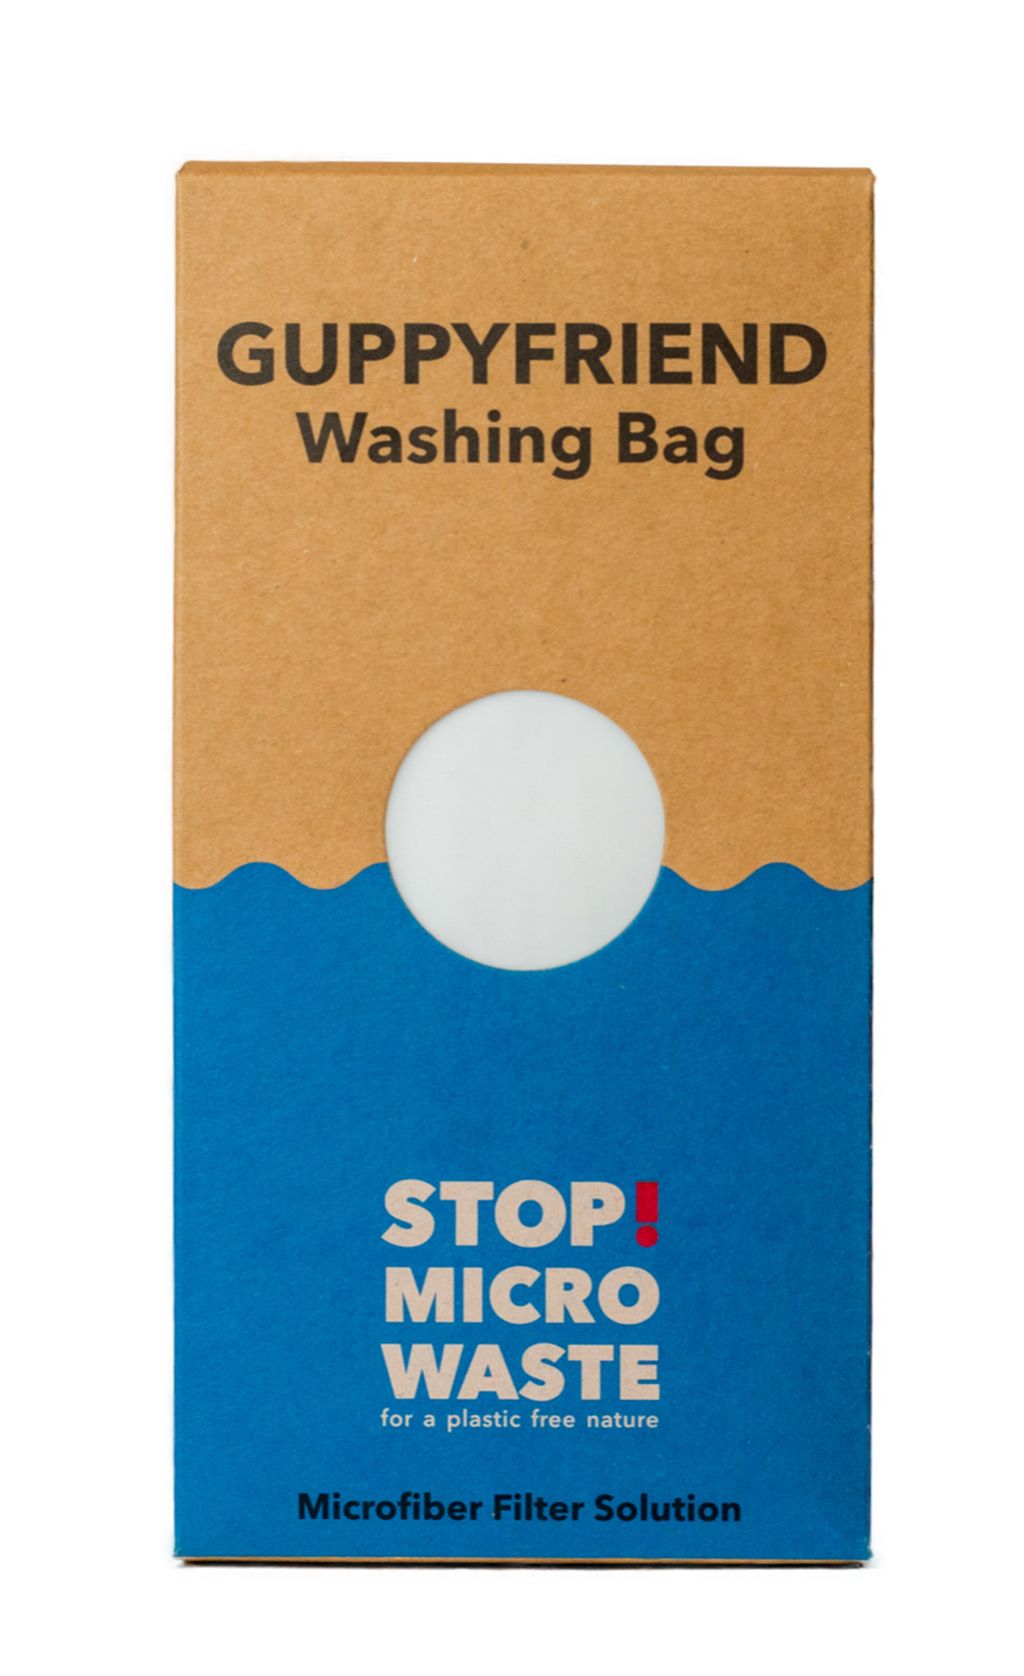 GuppyFriend Washing Bag